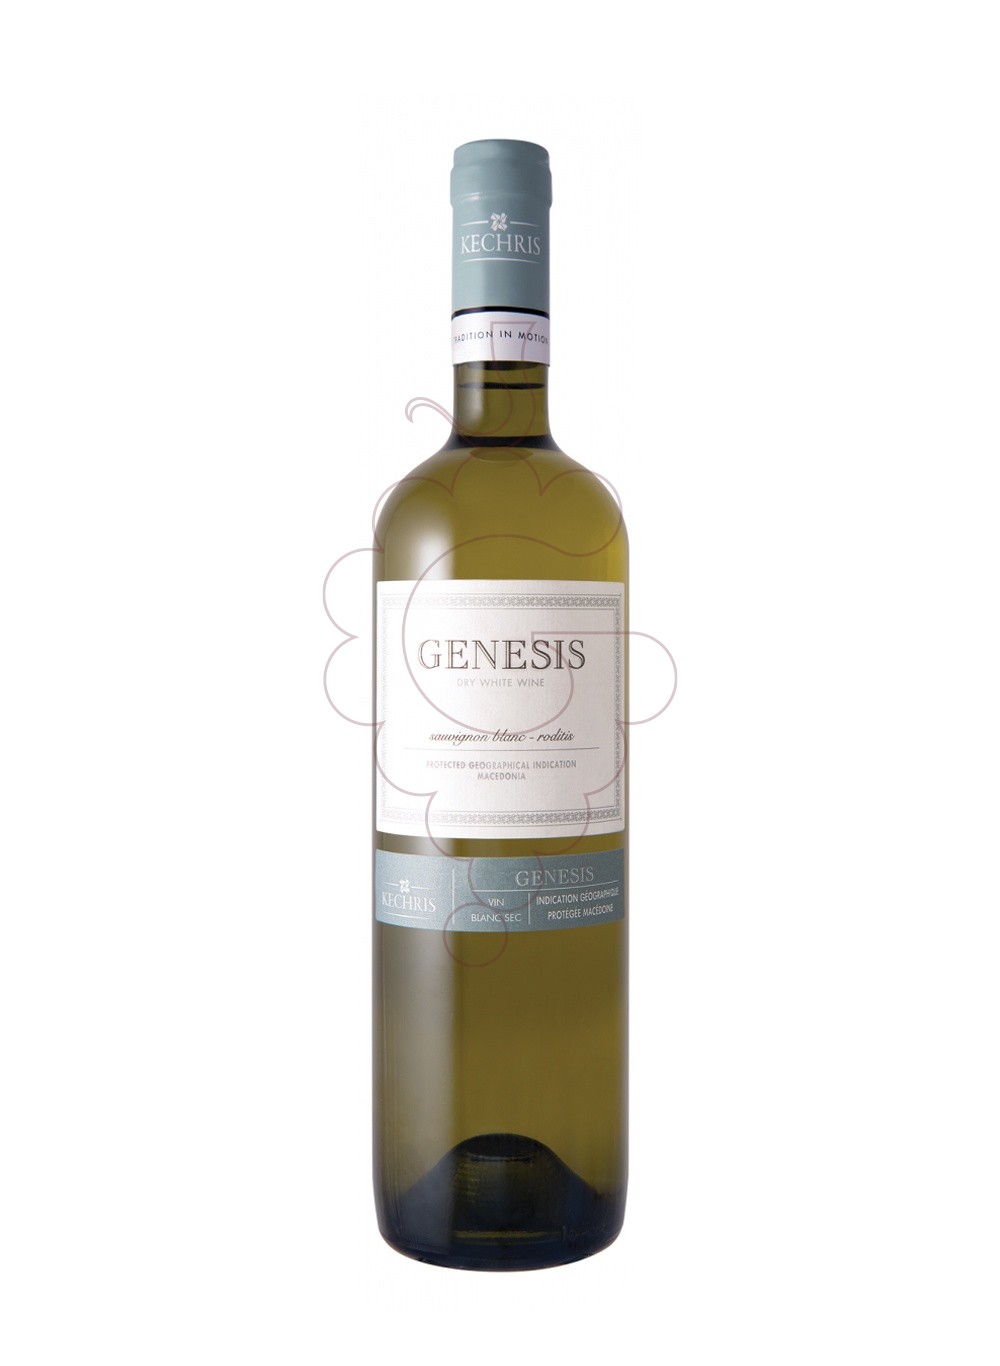 Foto Kechris Genesis Sauvignon Blanc vino blanco